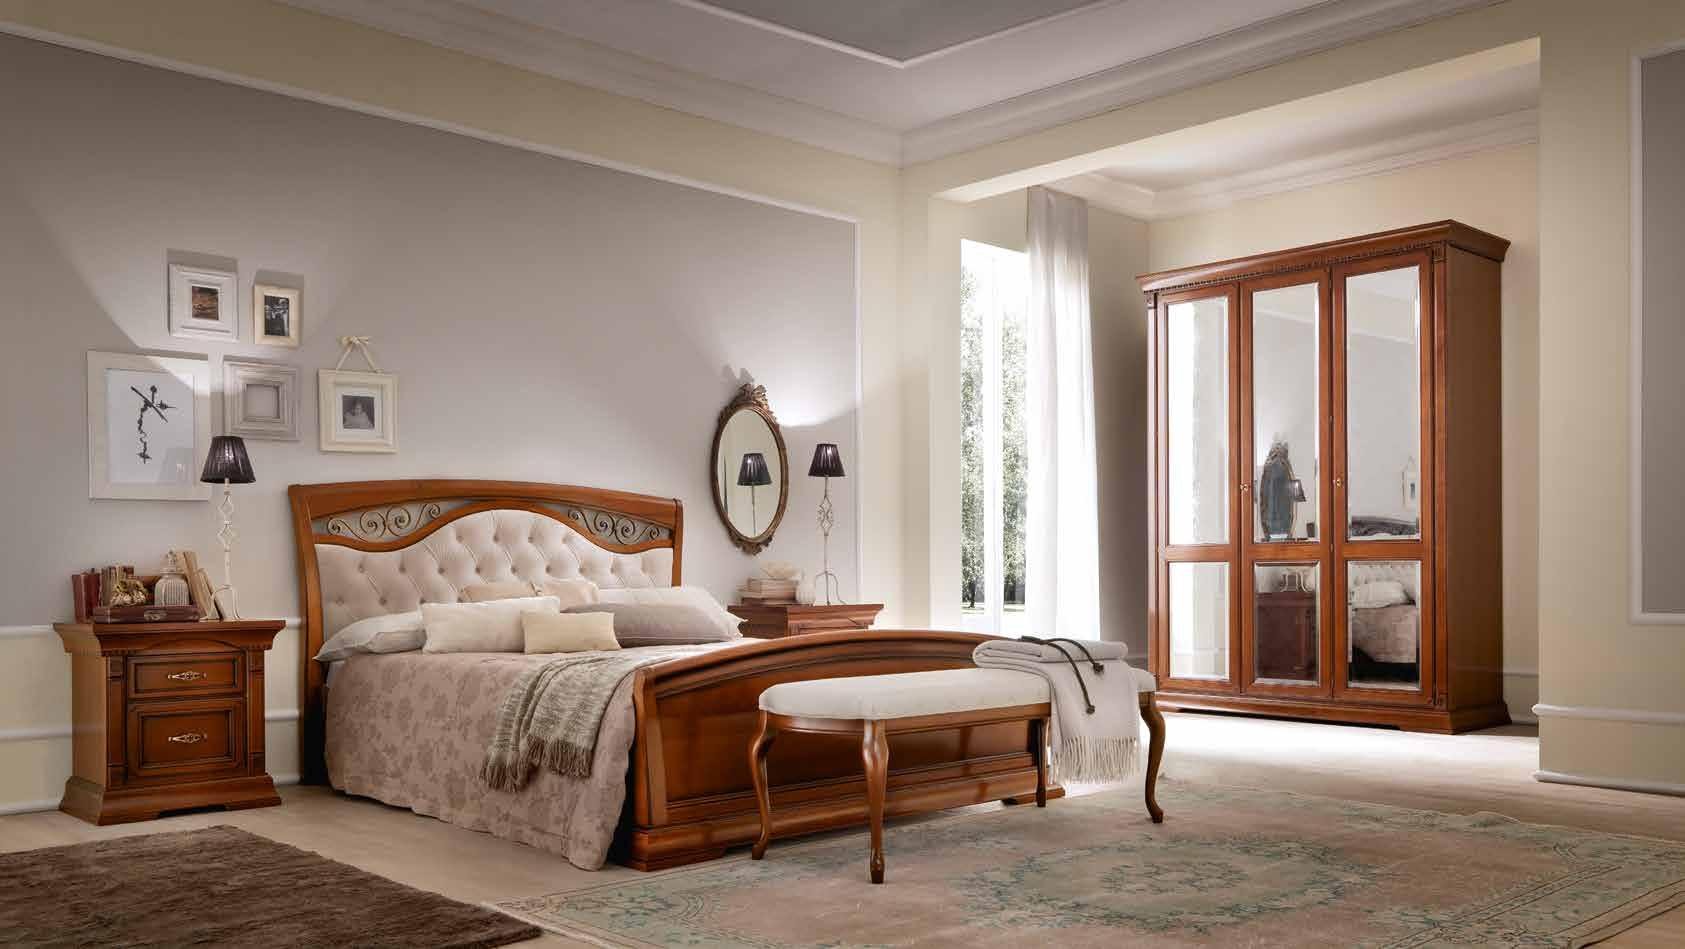 Кровать Prama Palazzo Ducale ciliegio, полуторная, с мягким изголовьем, с ковкой, цвет: вишня, 140x200 см (71CI63LT)71CI63LT